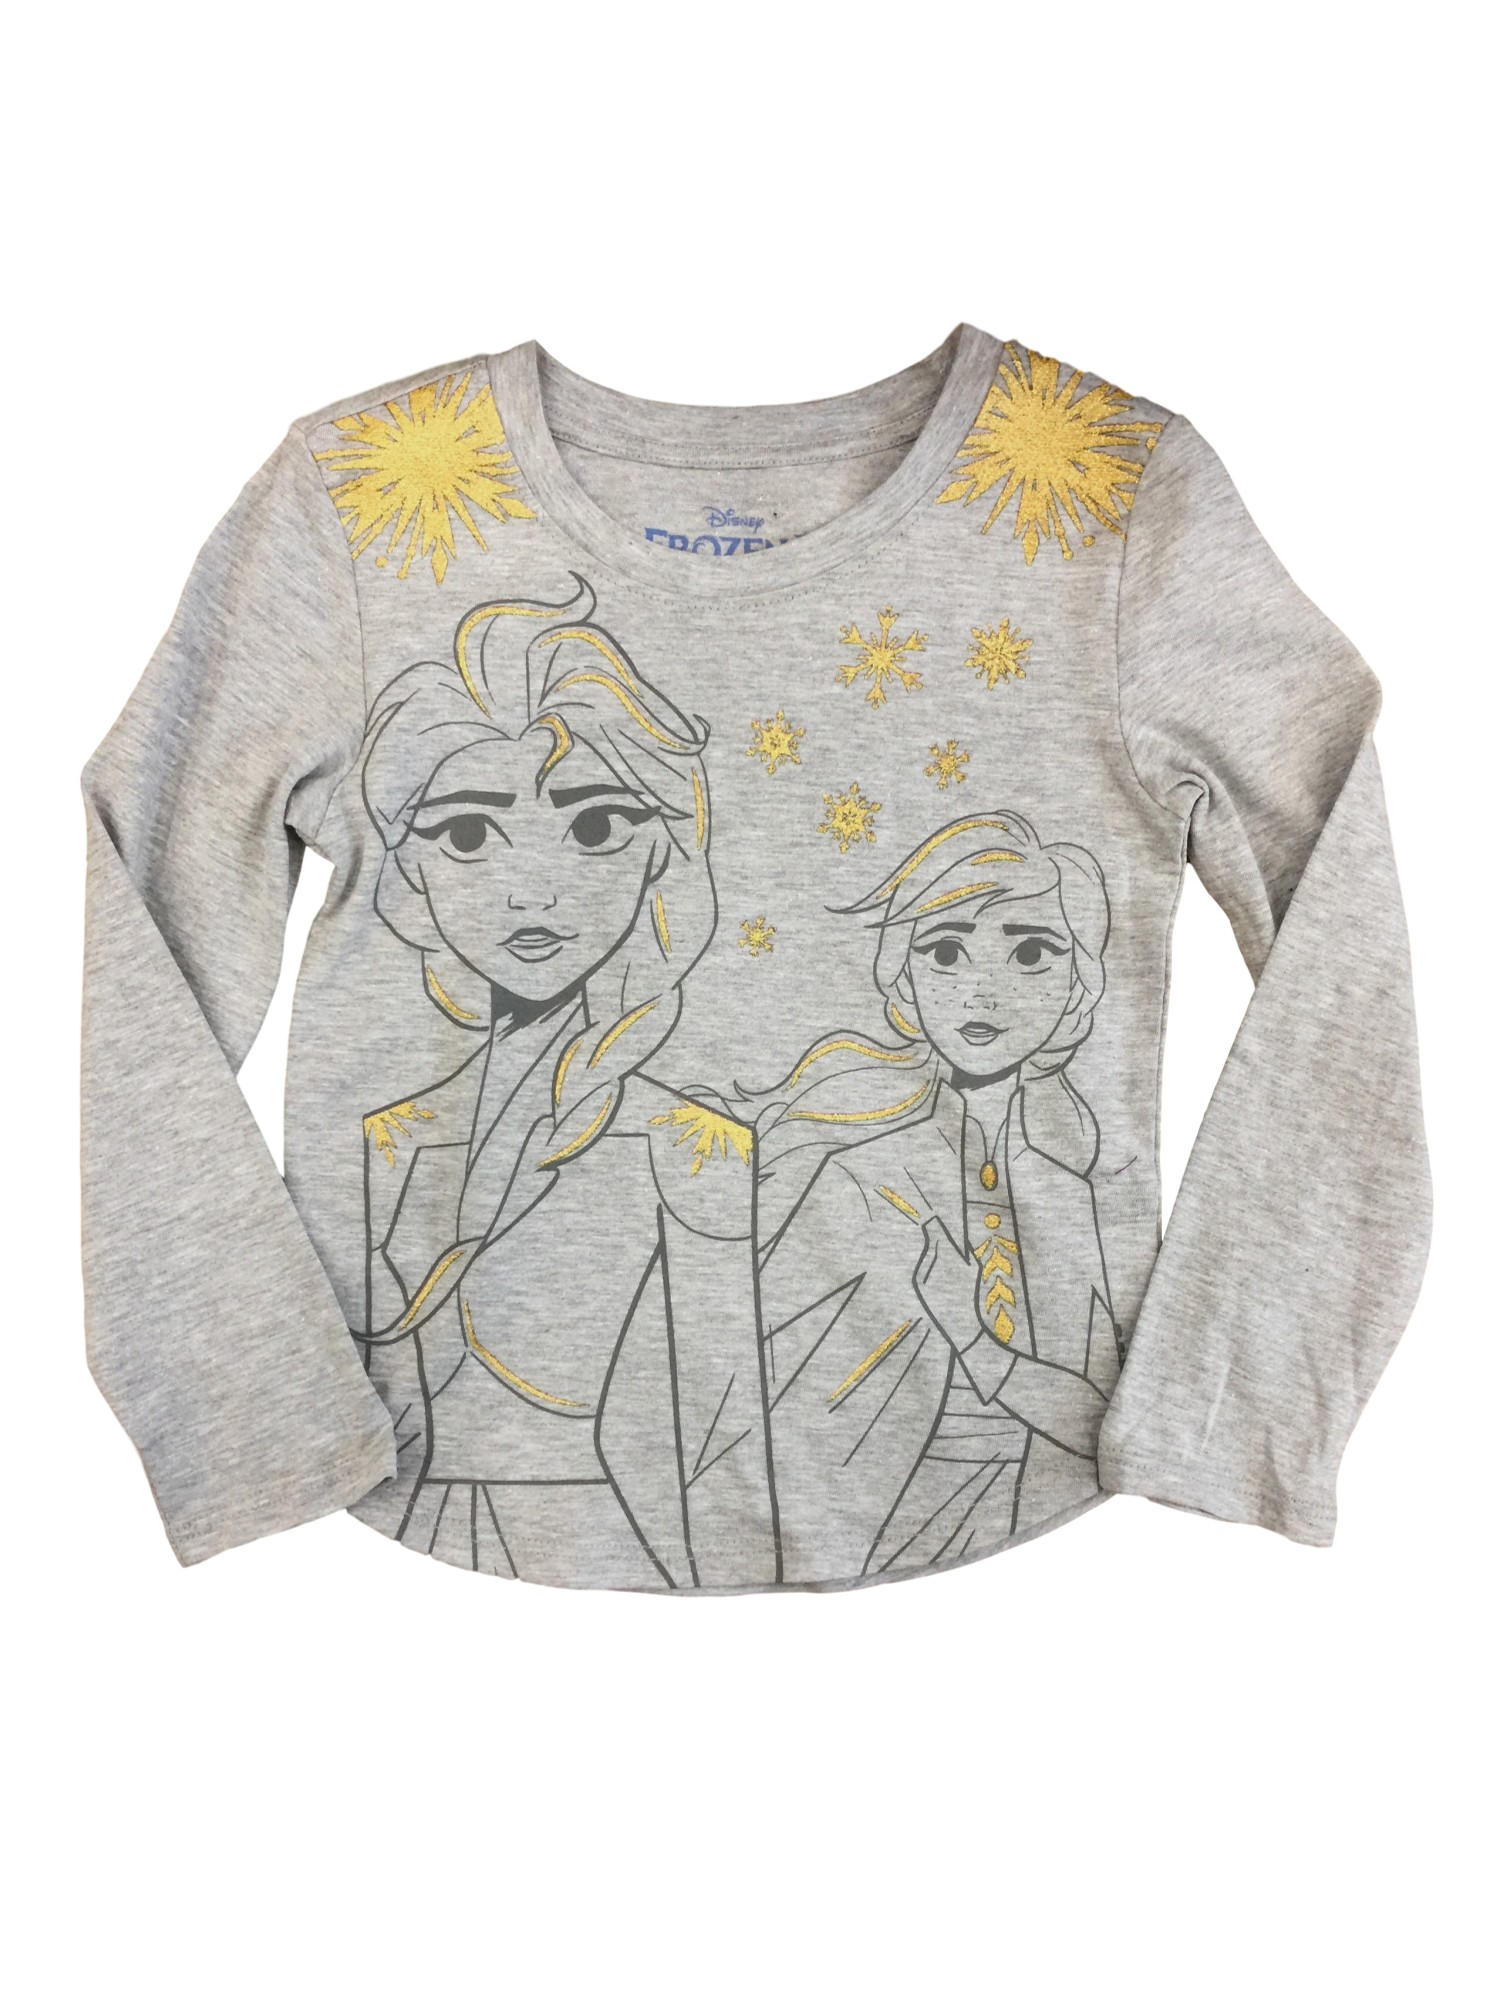 Disney Frozen 2 Girls Elsa & Anna Gray & Glitter Gold Long Sleeve Shirt